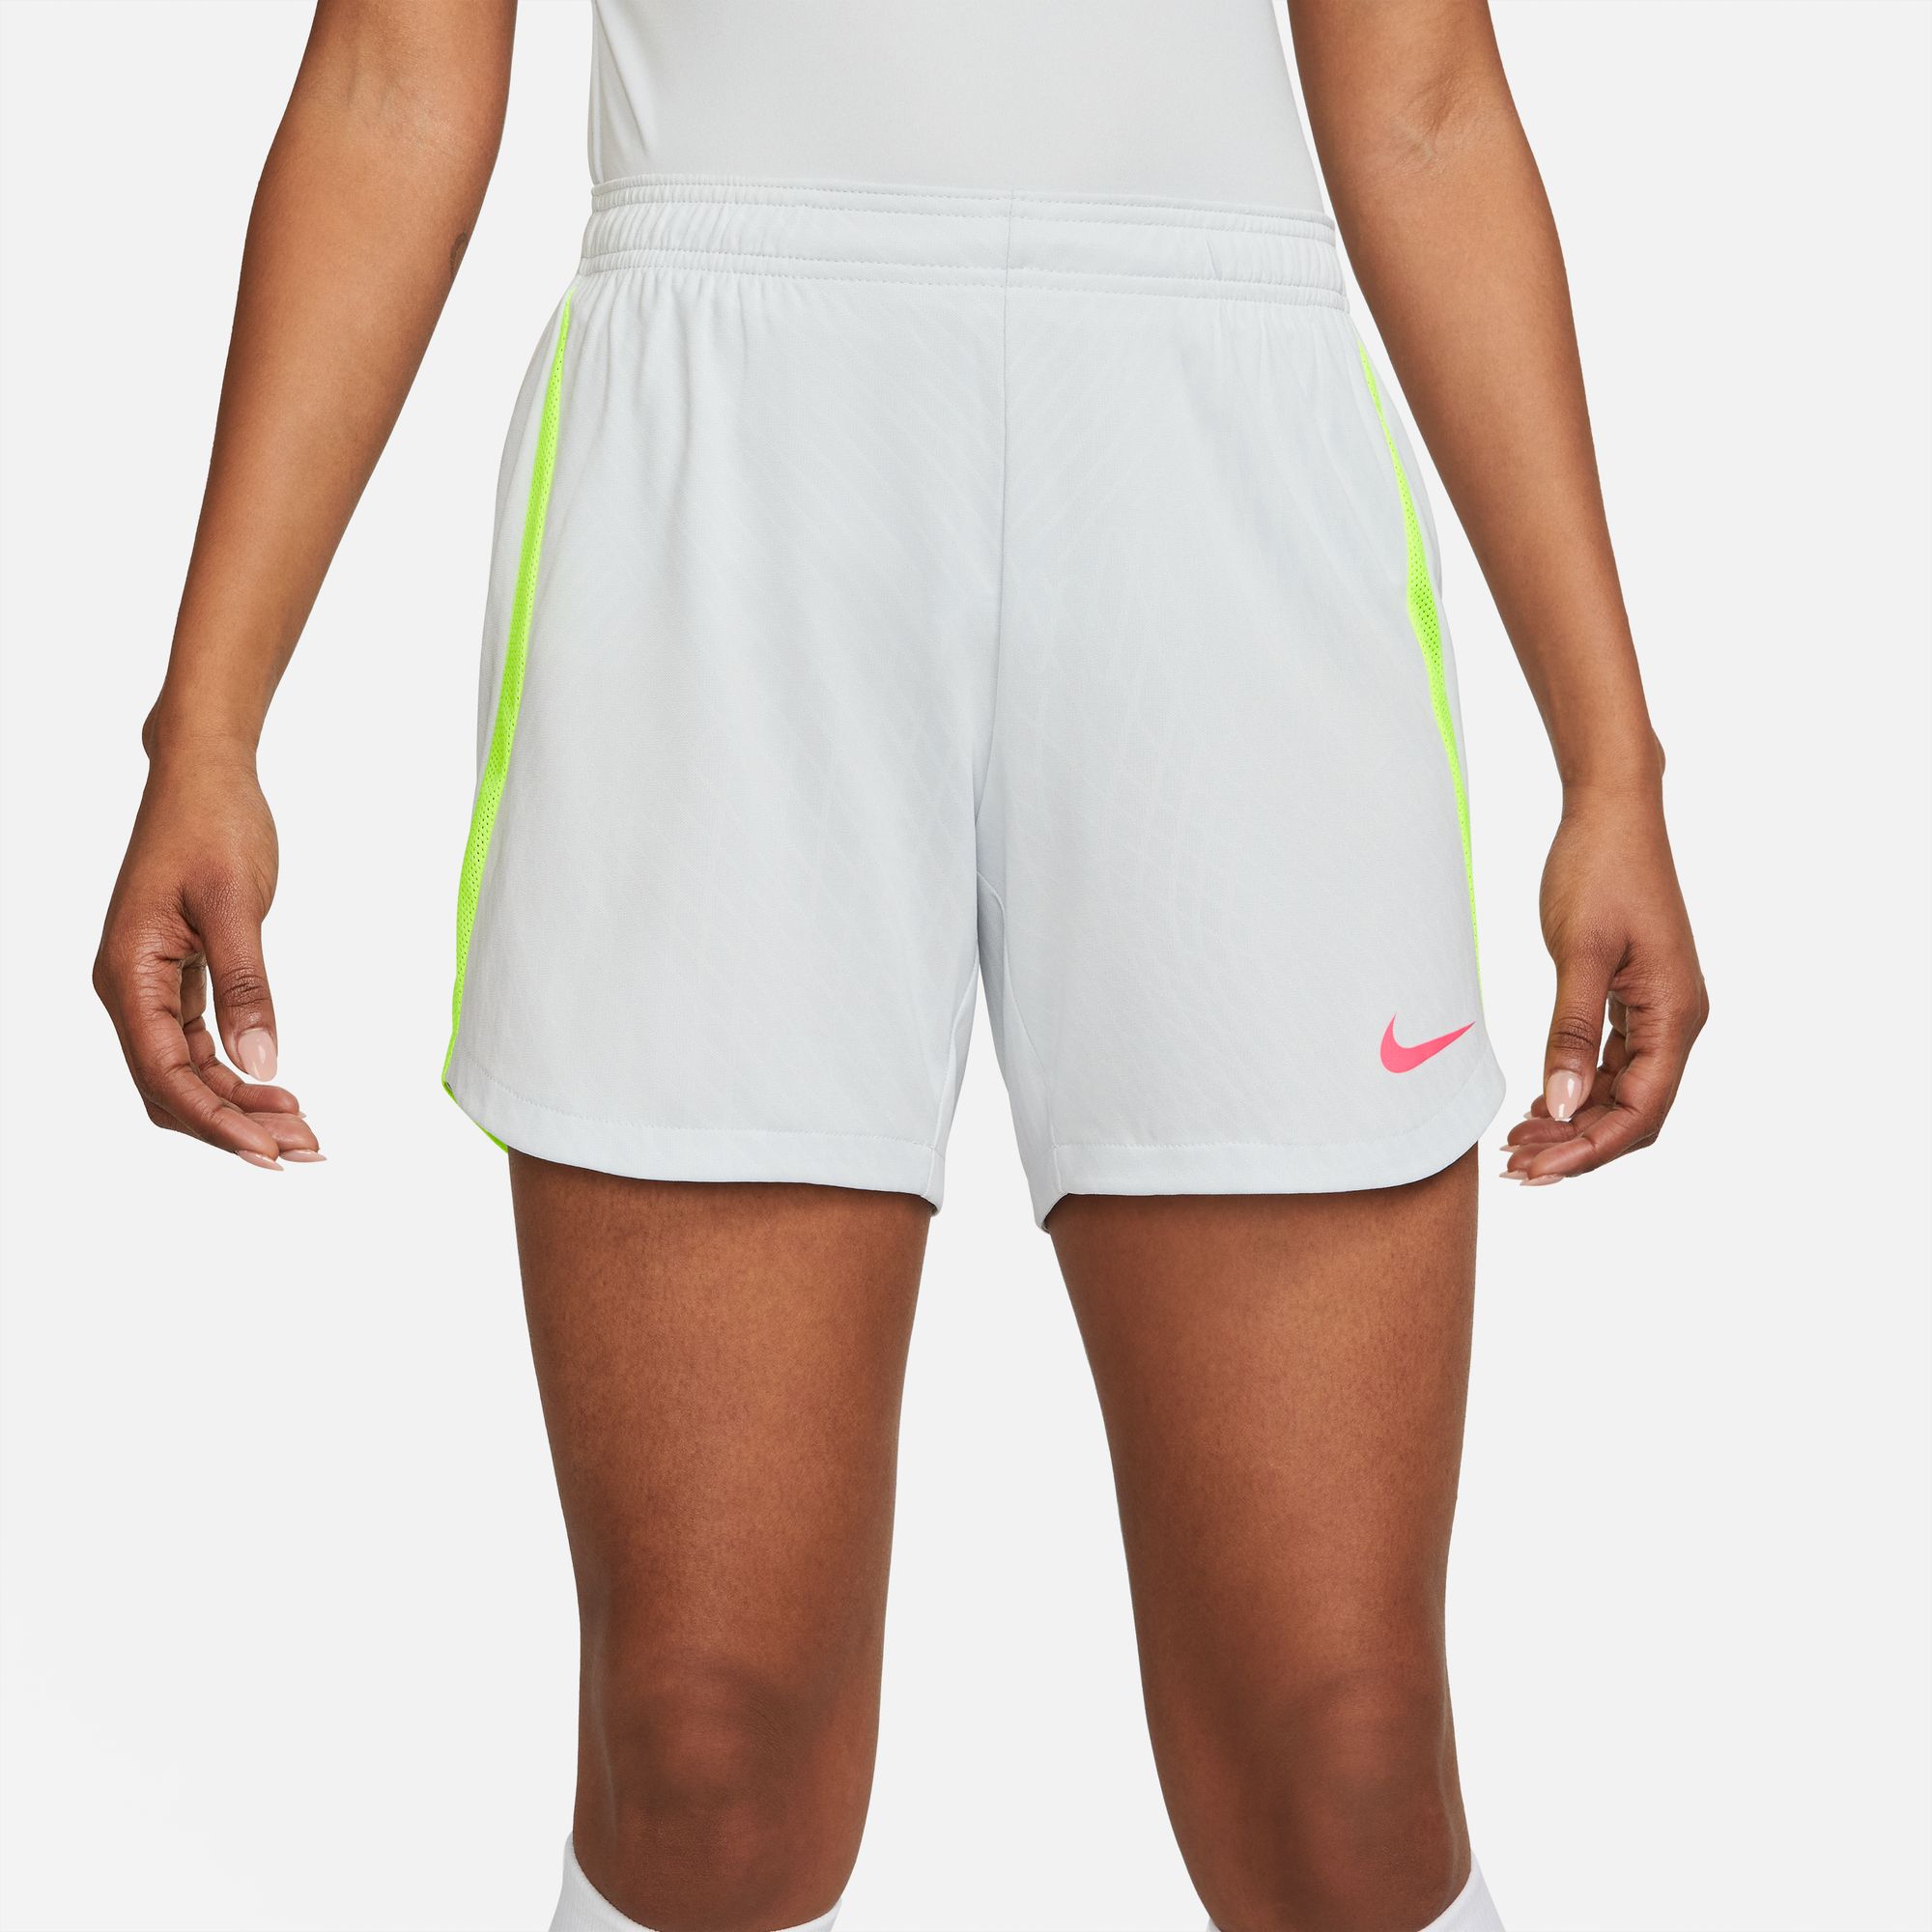 stefanssoccer.com:Nike Women's Strike Shorts - Light Grey /